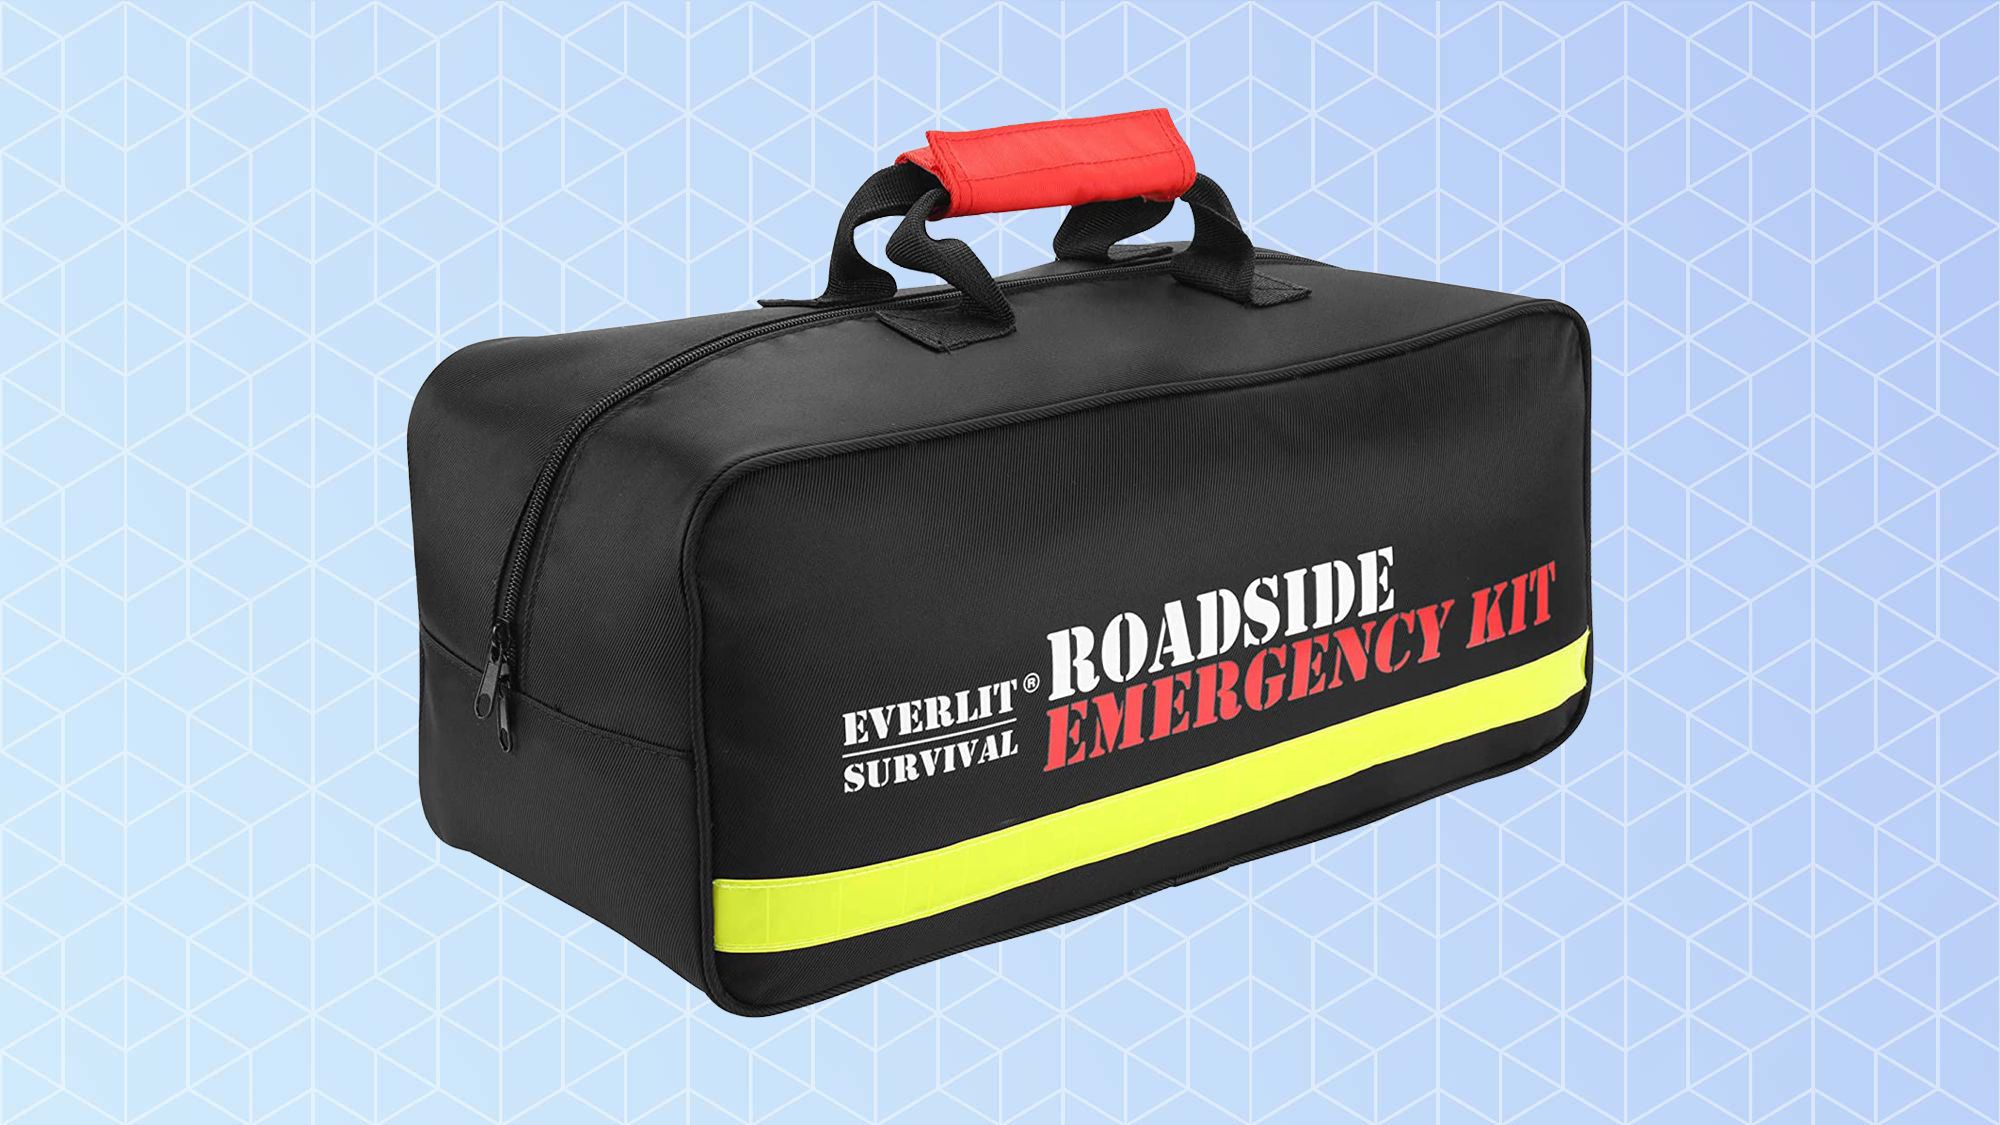  Everlit Survival Car Emergency Kit, Roadside Safety